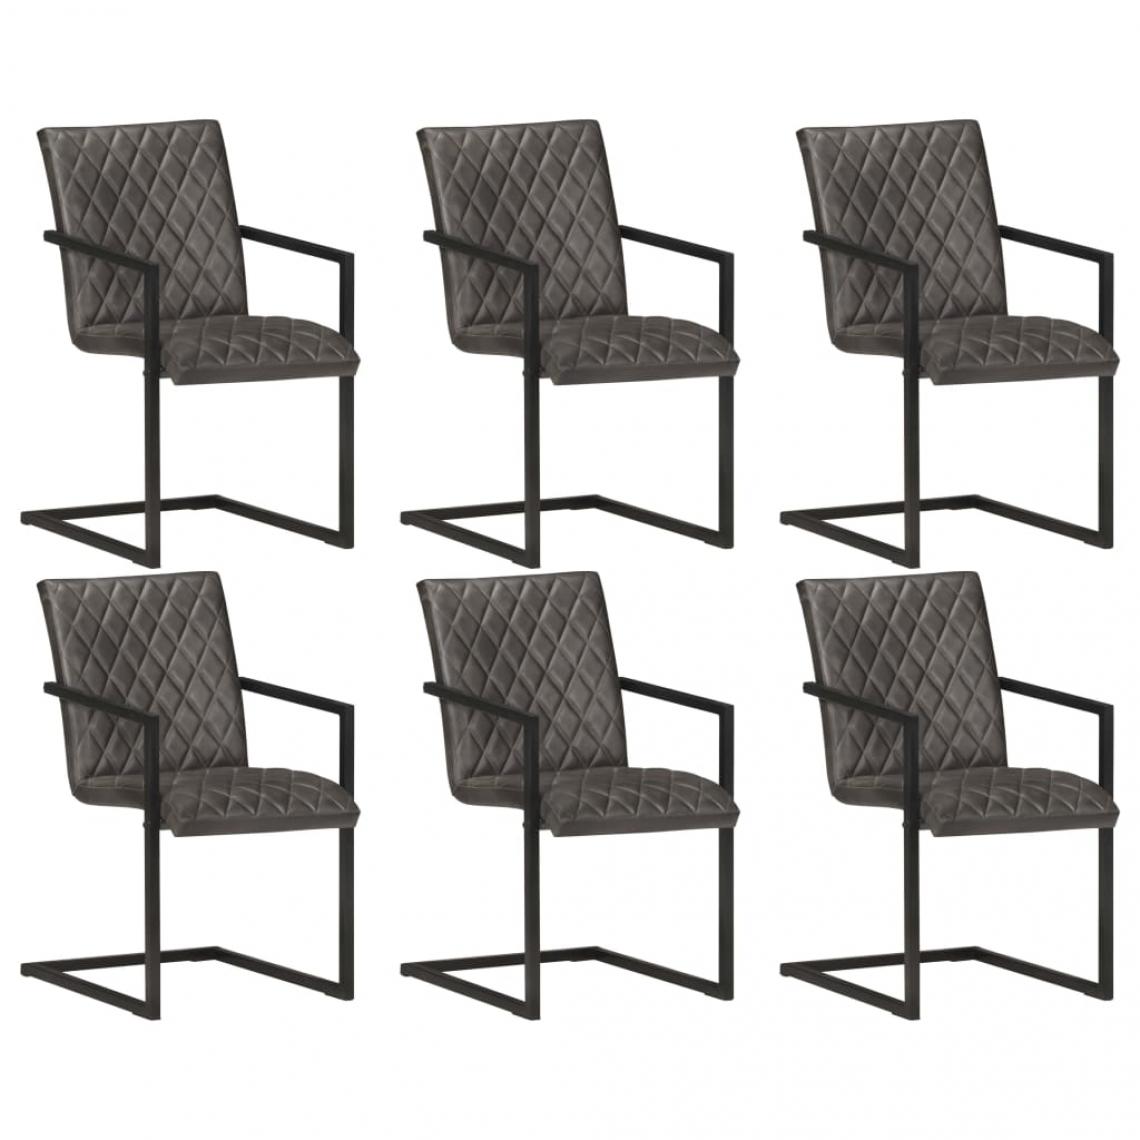 Decoshop26 - Lot de 6 chaises de salle à manger cuisine cantilever style chic cuir véritable gris pieds métal CDS022277 - Chaises